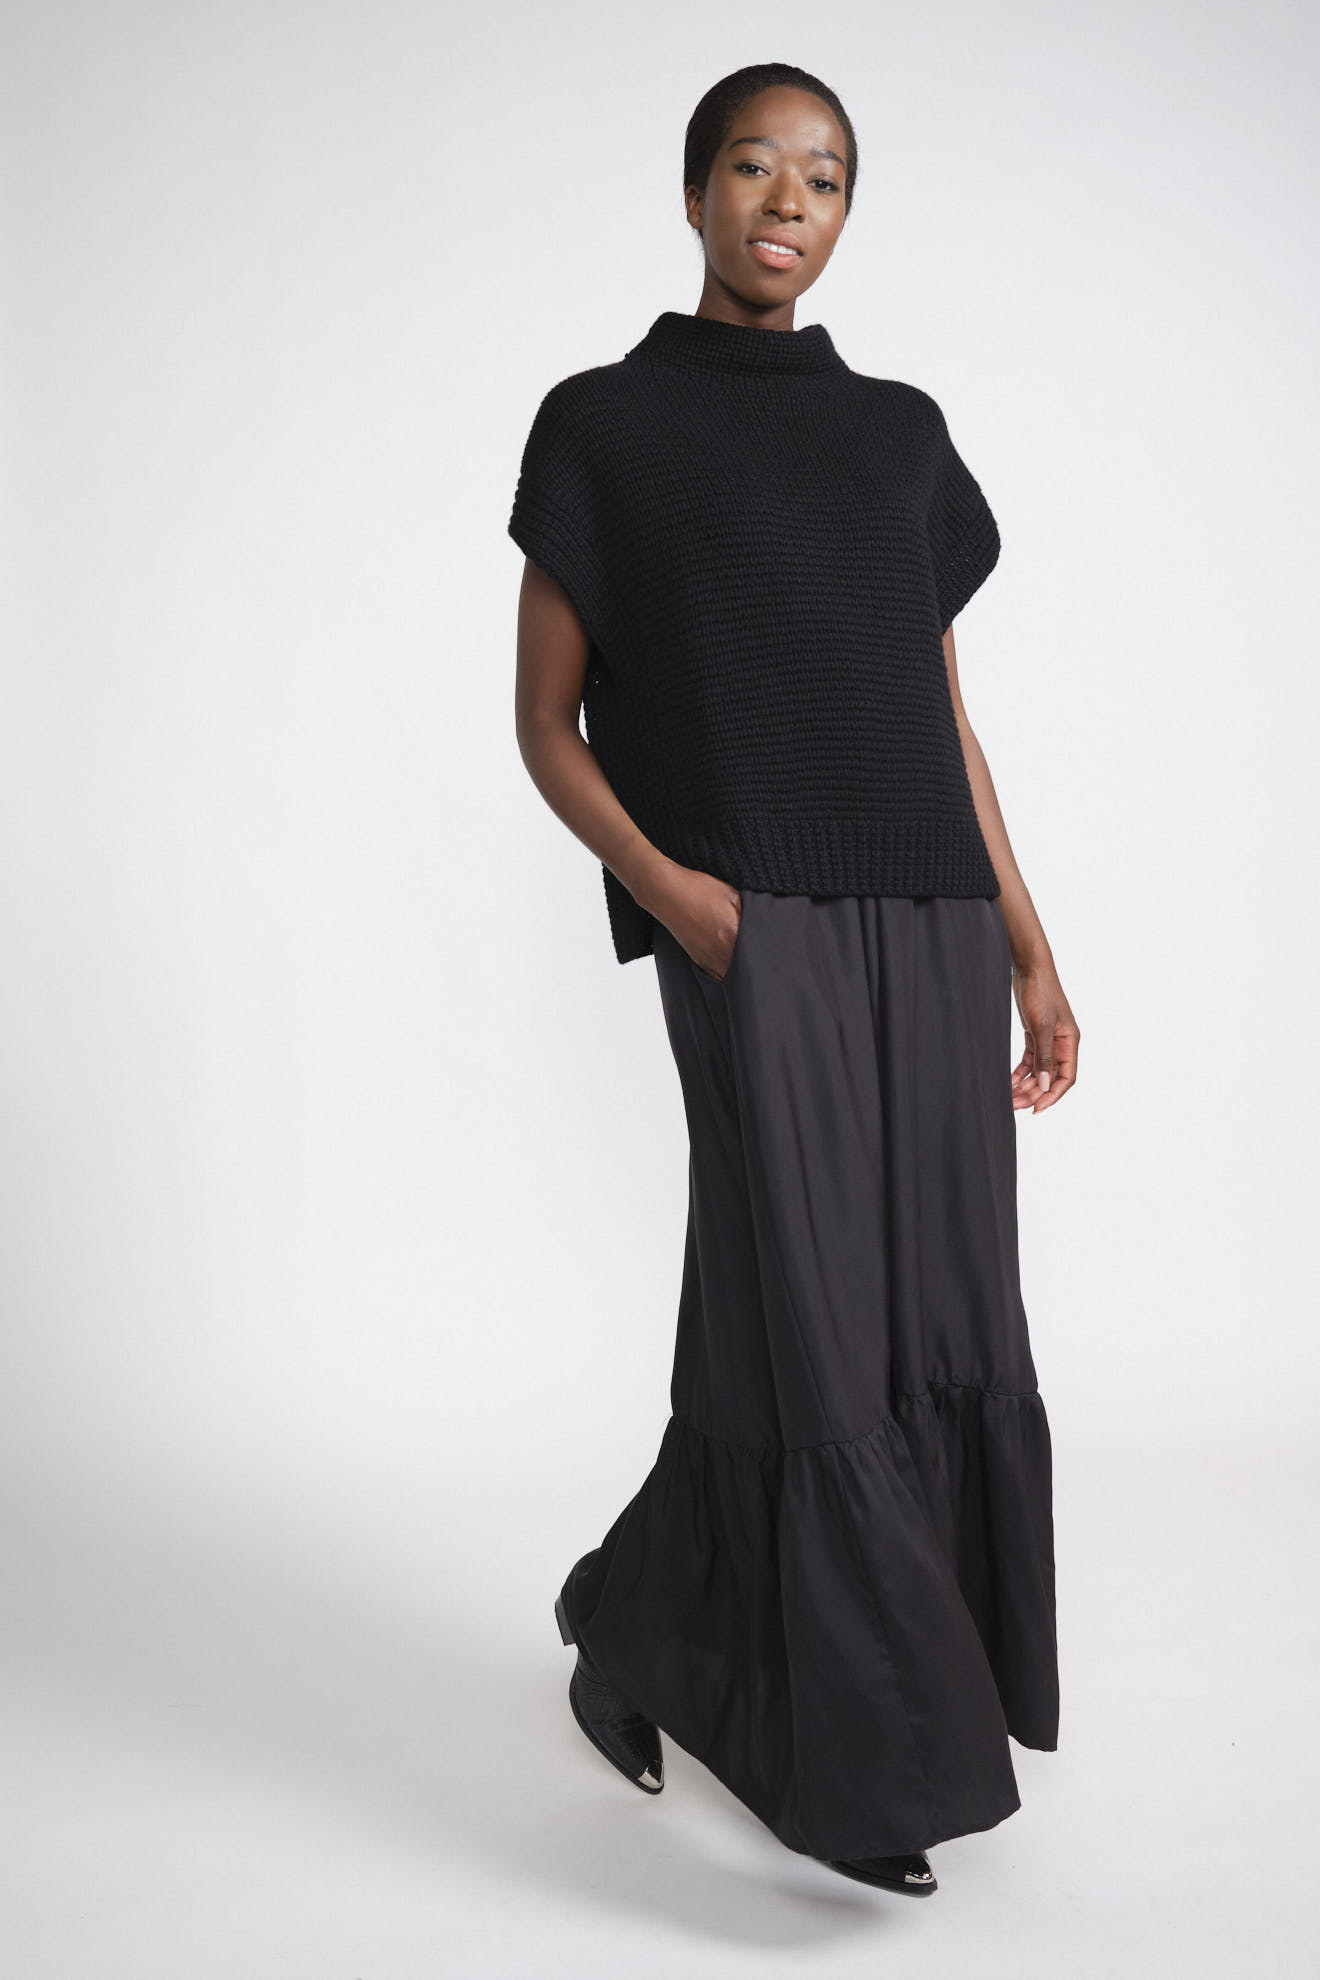 iris von arnim blouse black plain cashmere